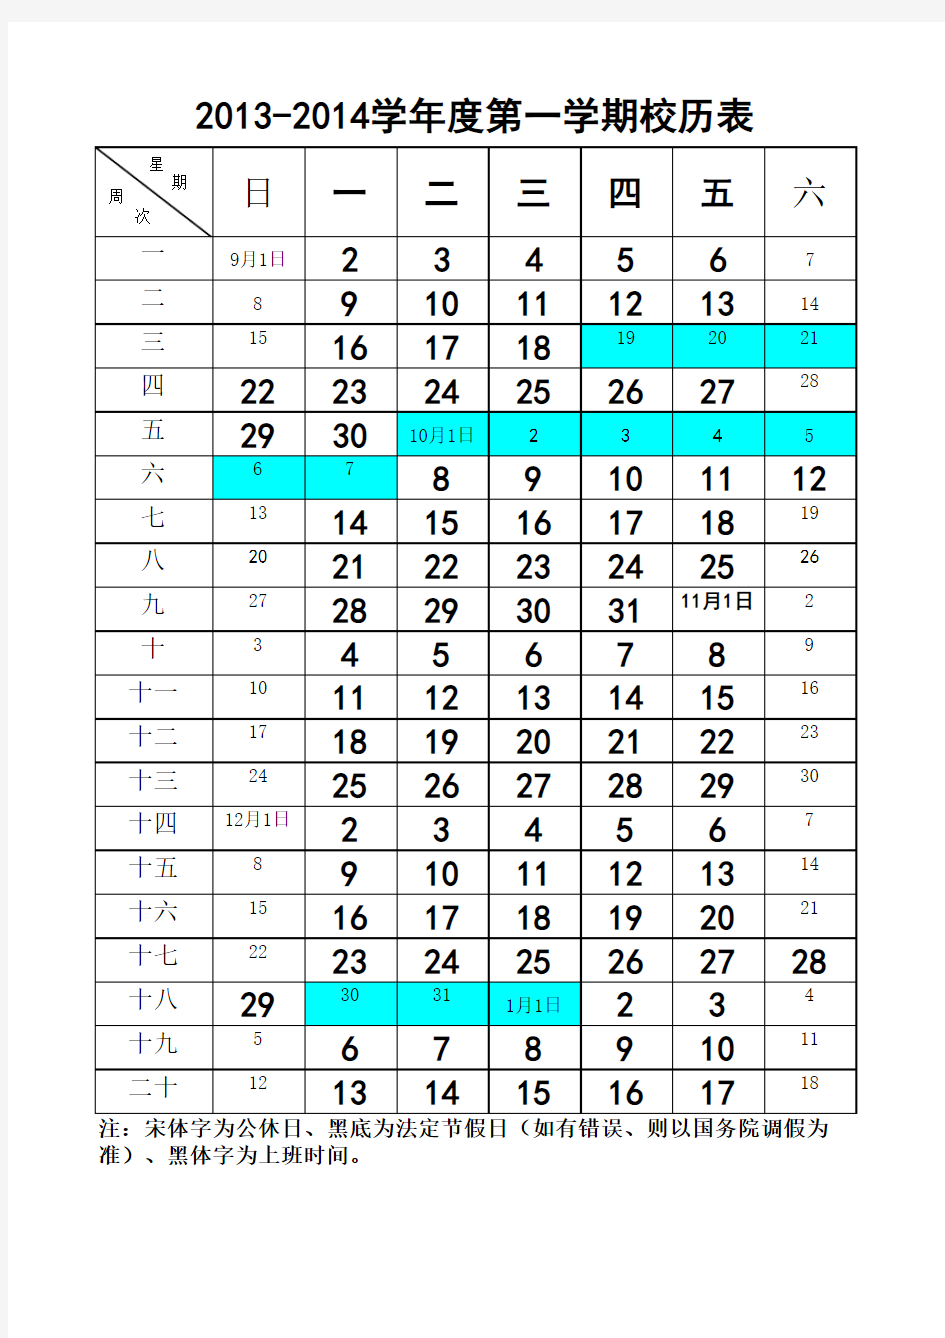 2013-2014学年度第一学期校历表